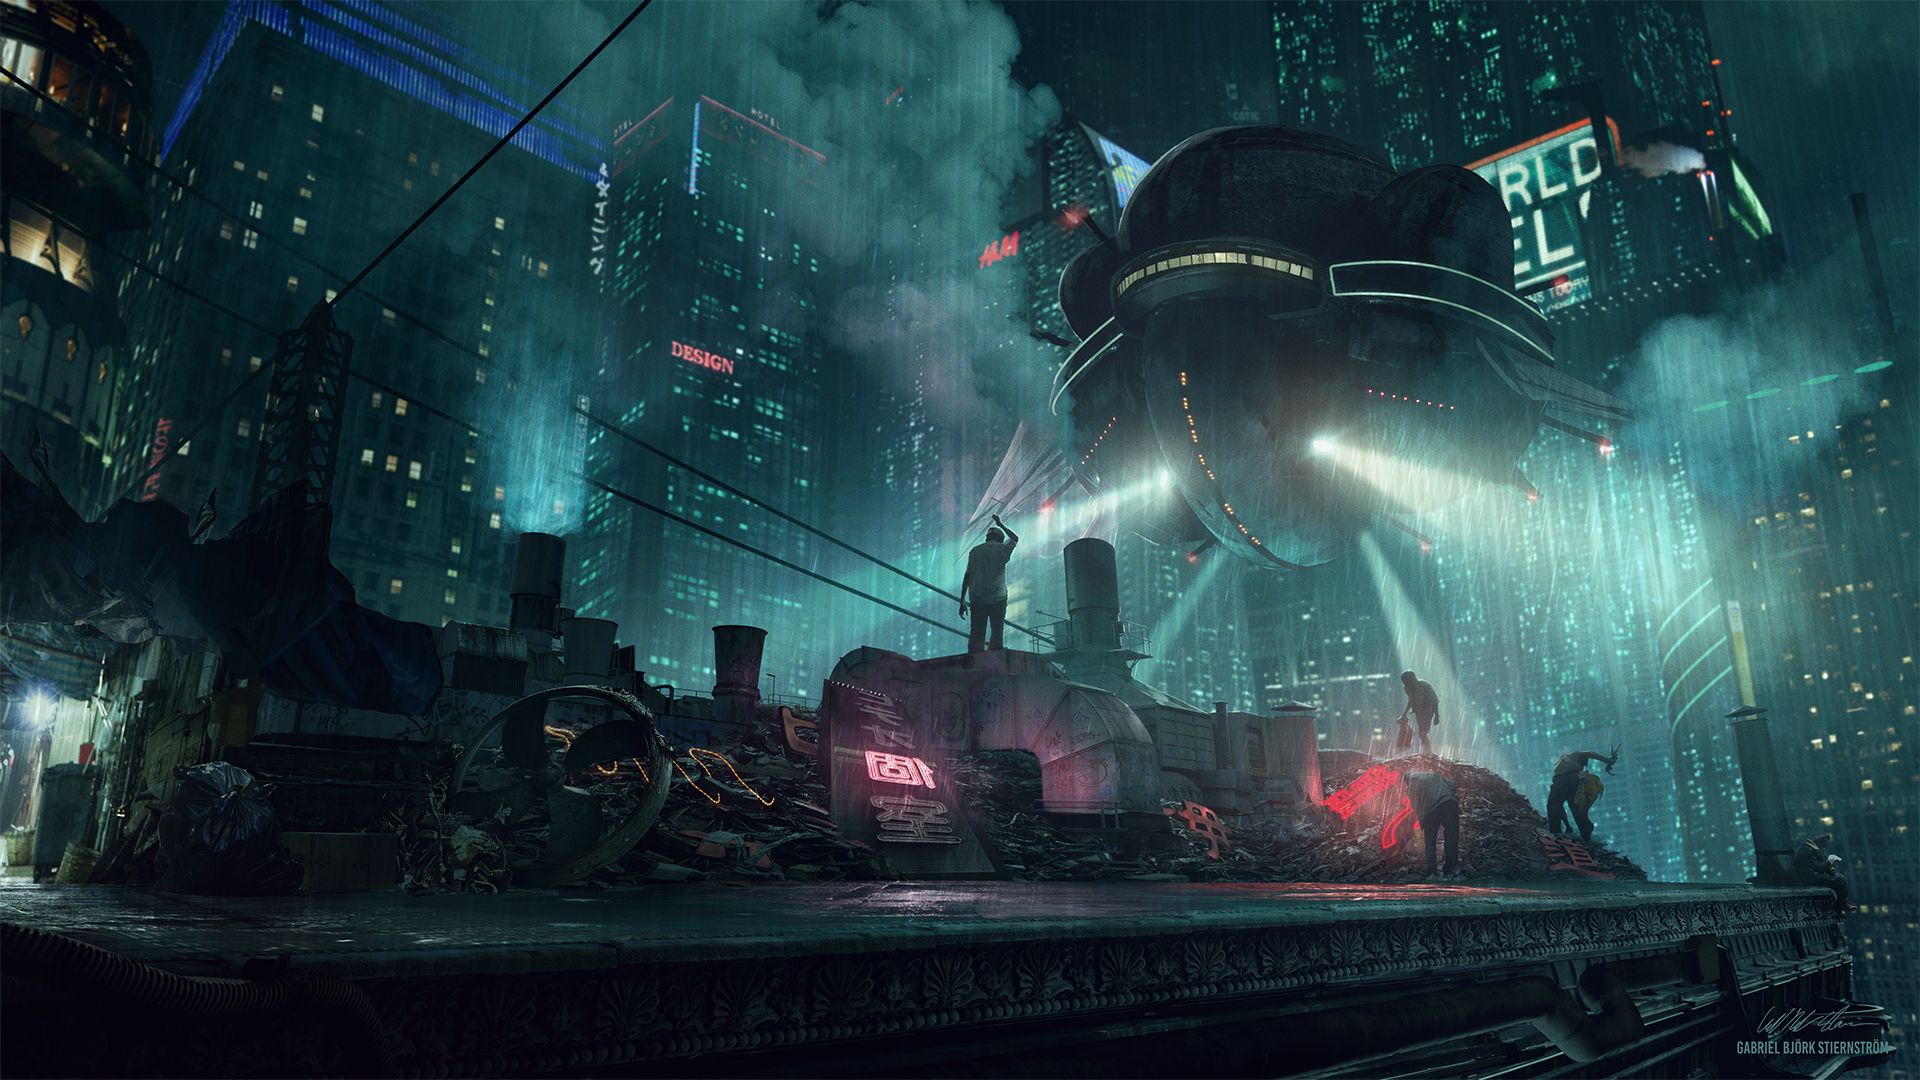 cyberpunk, night, vehicle, futuristic, sci fi, city, rain, skyscraper